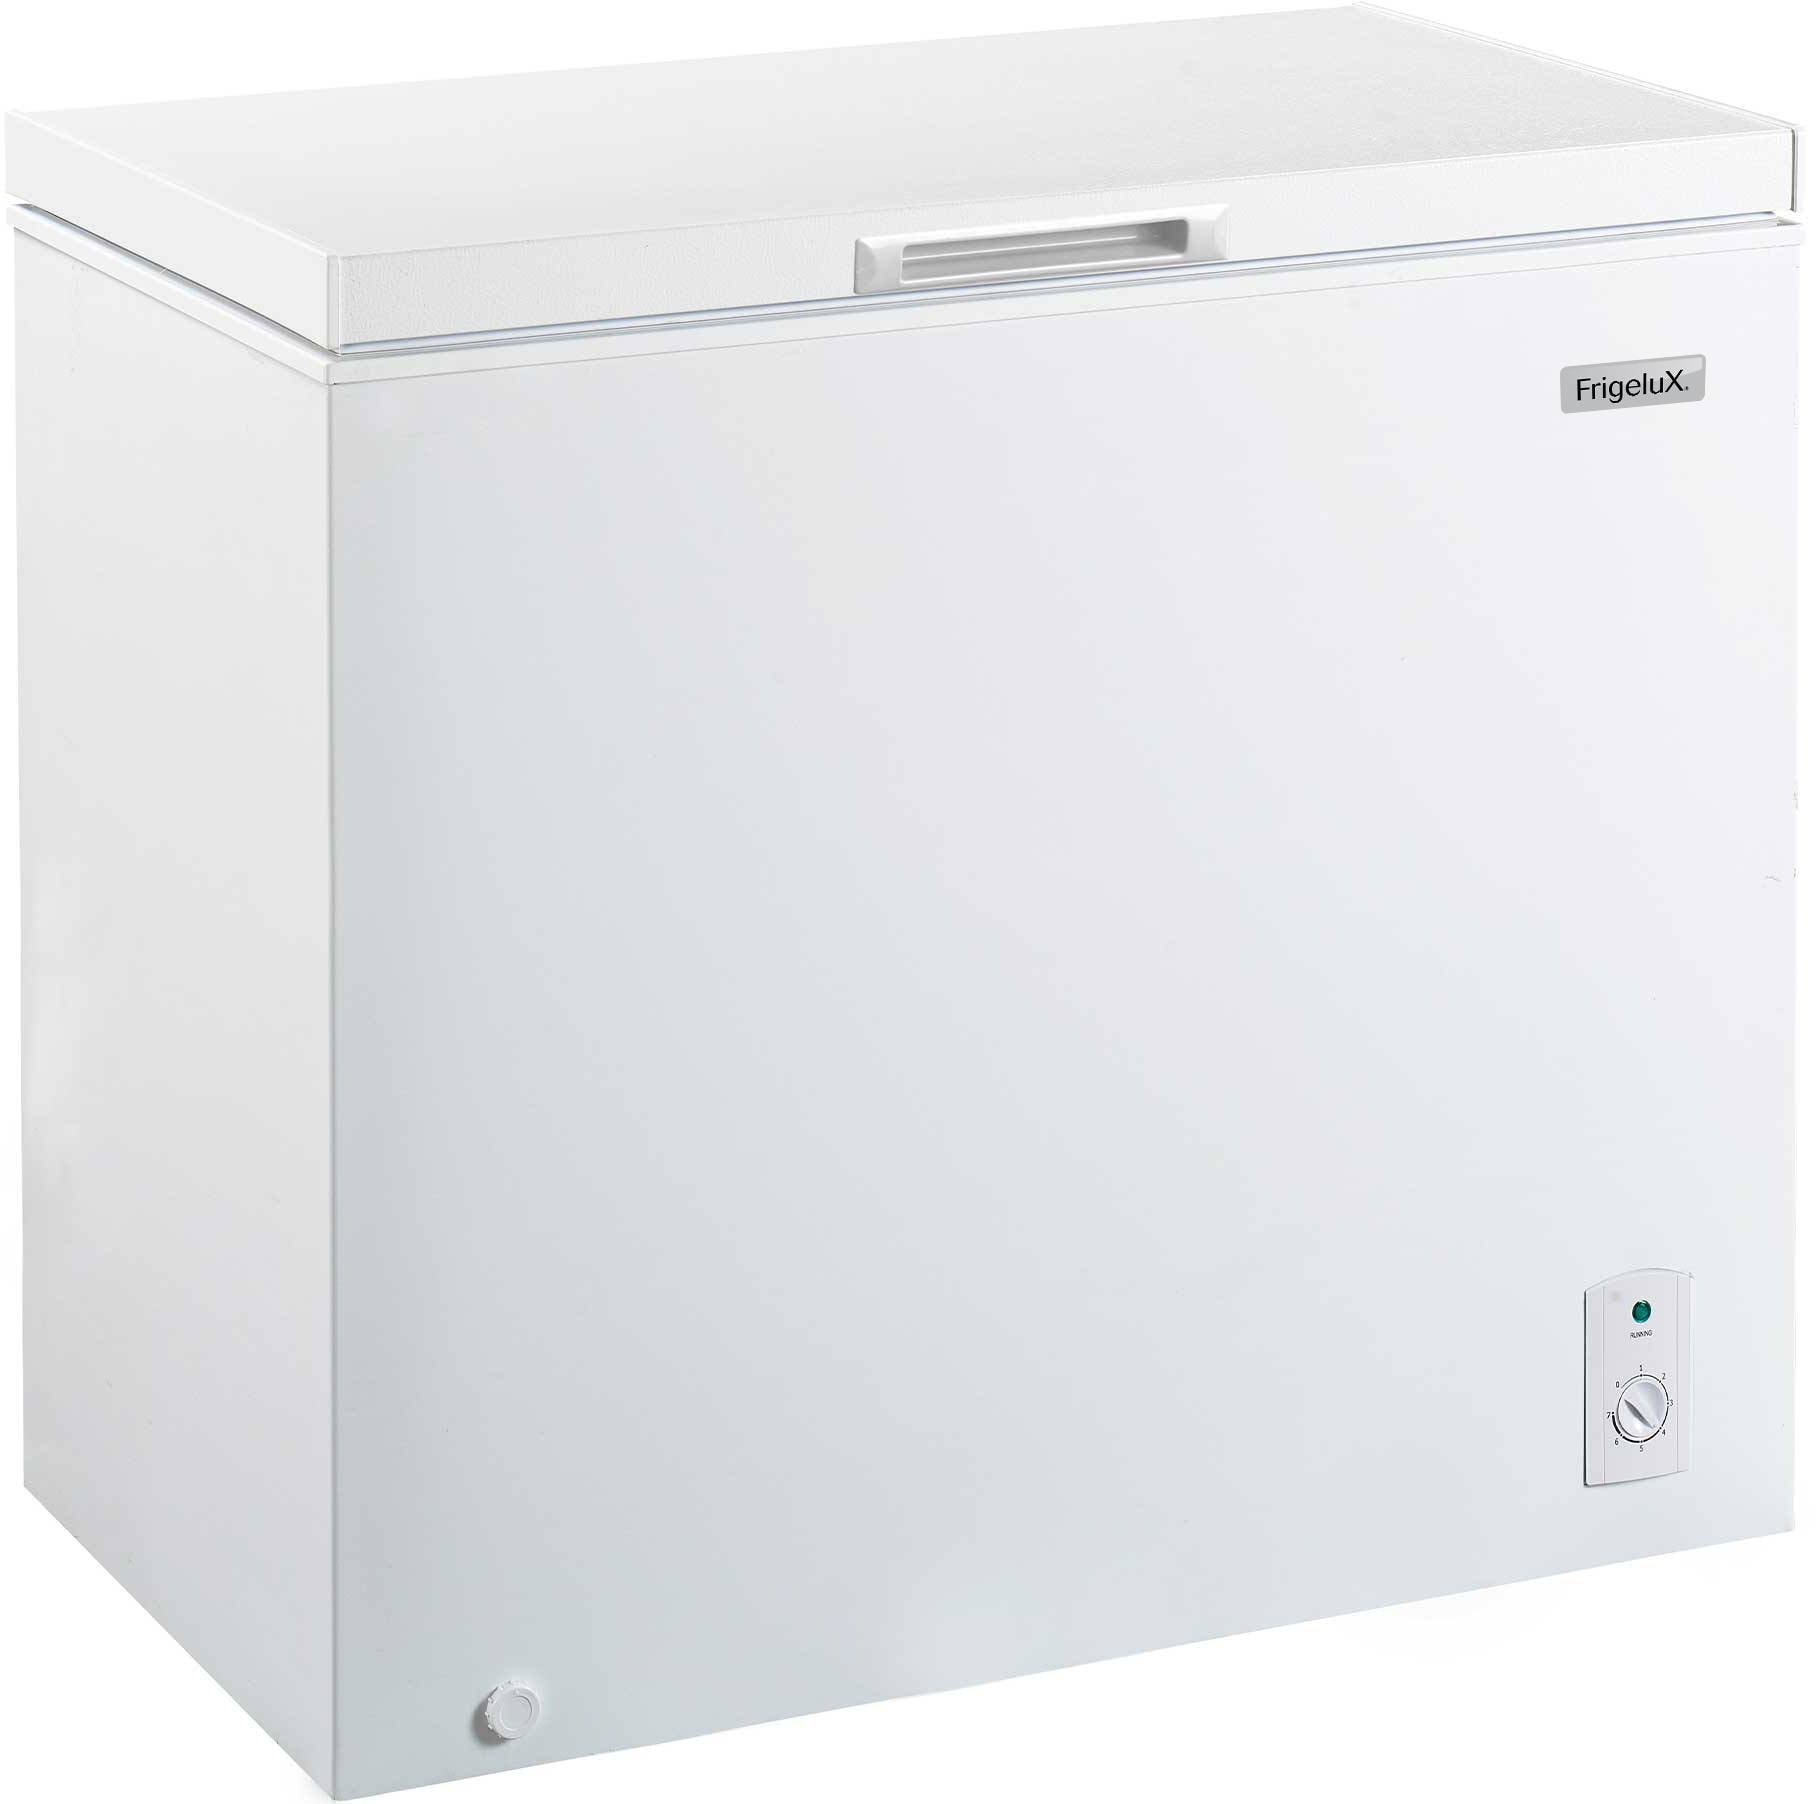 California Réfrigérateur table top 55cm 98l blanc - CCFS98AW-11 pas cher 